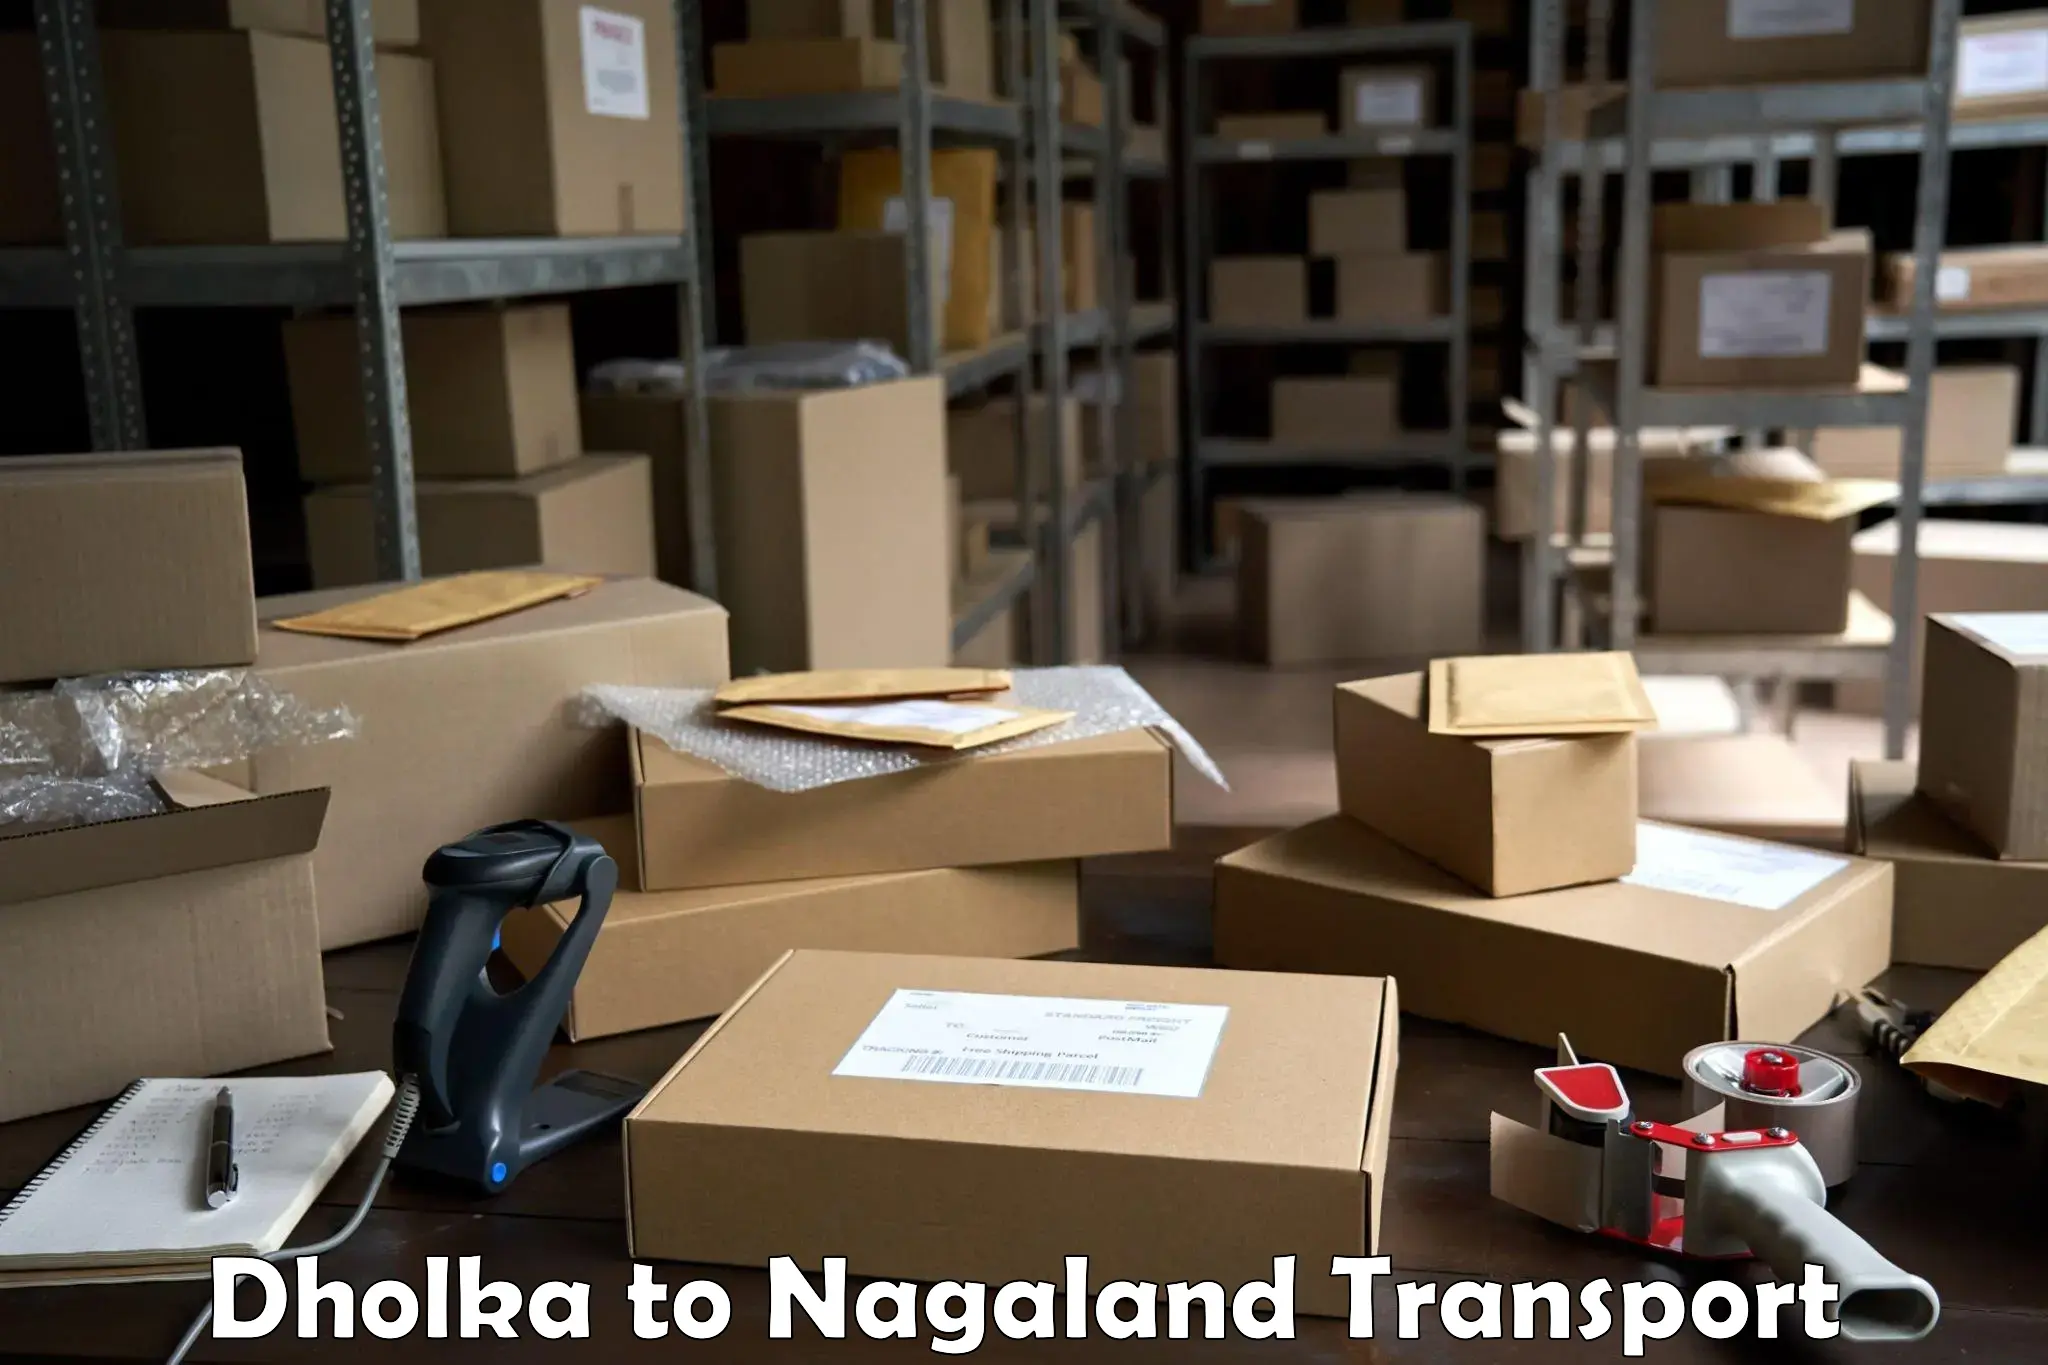 Bike transport service Dholka to NIT Nagaland